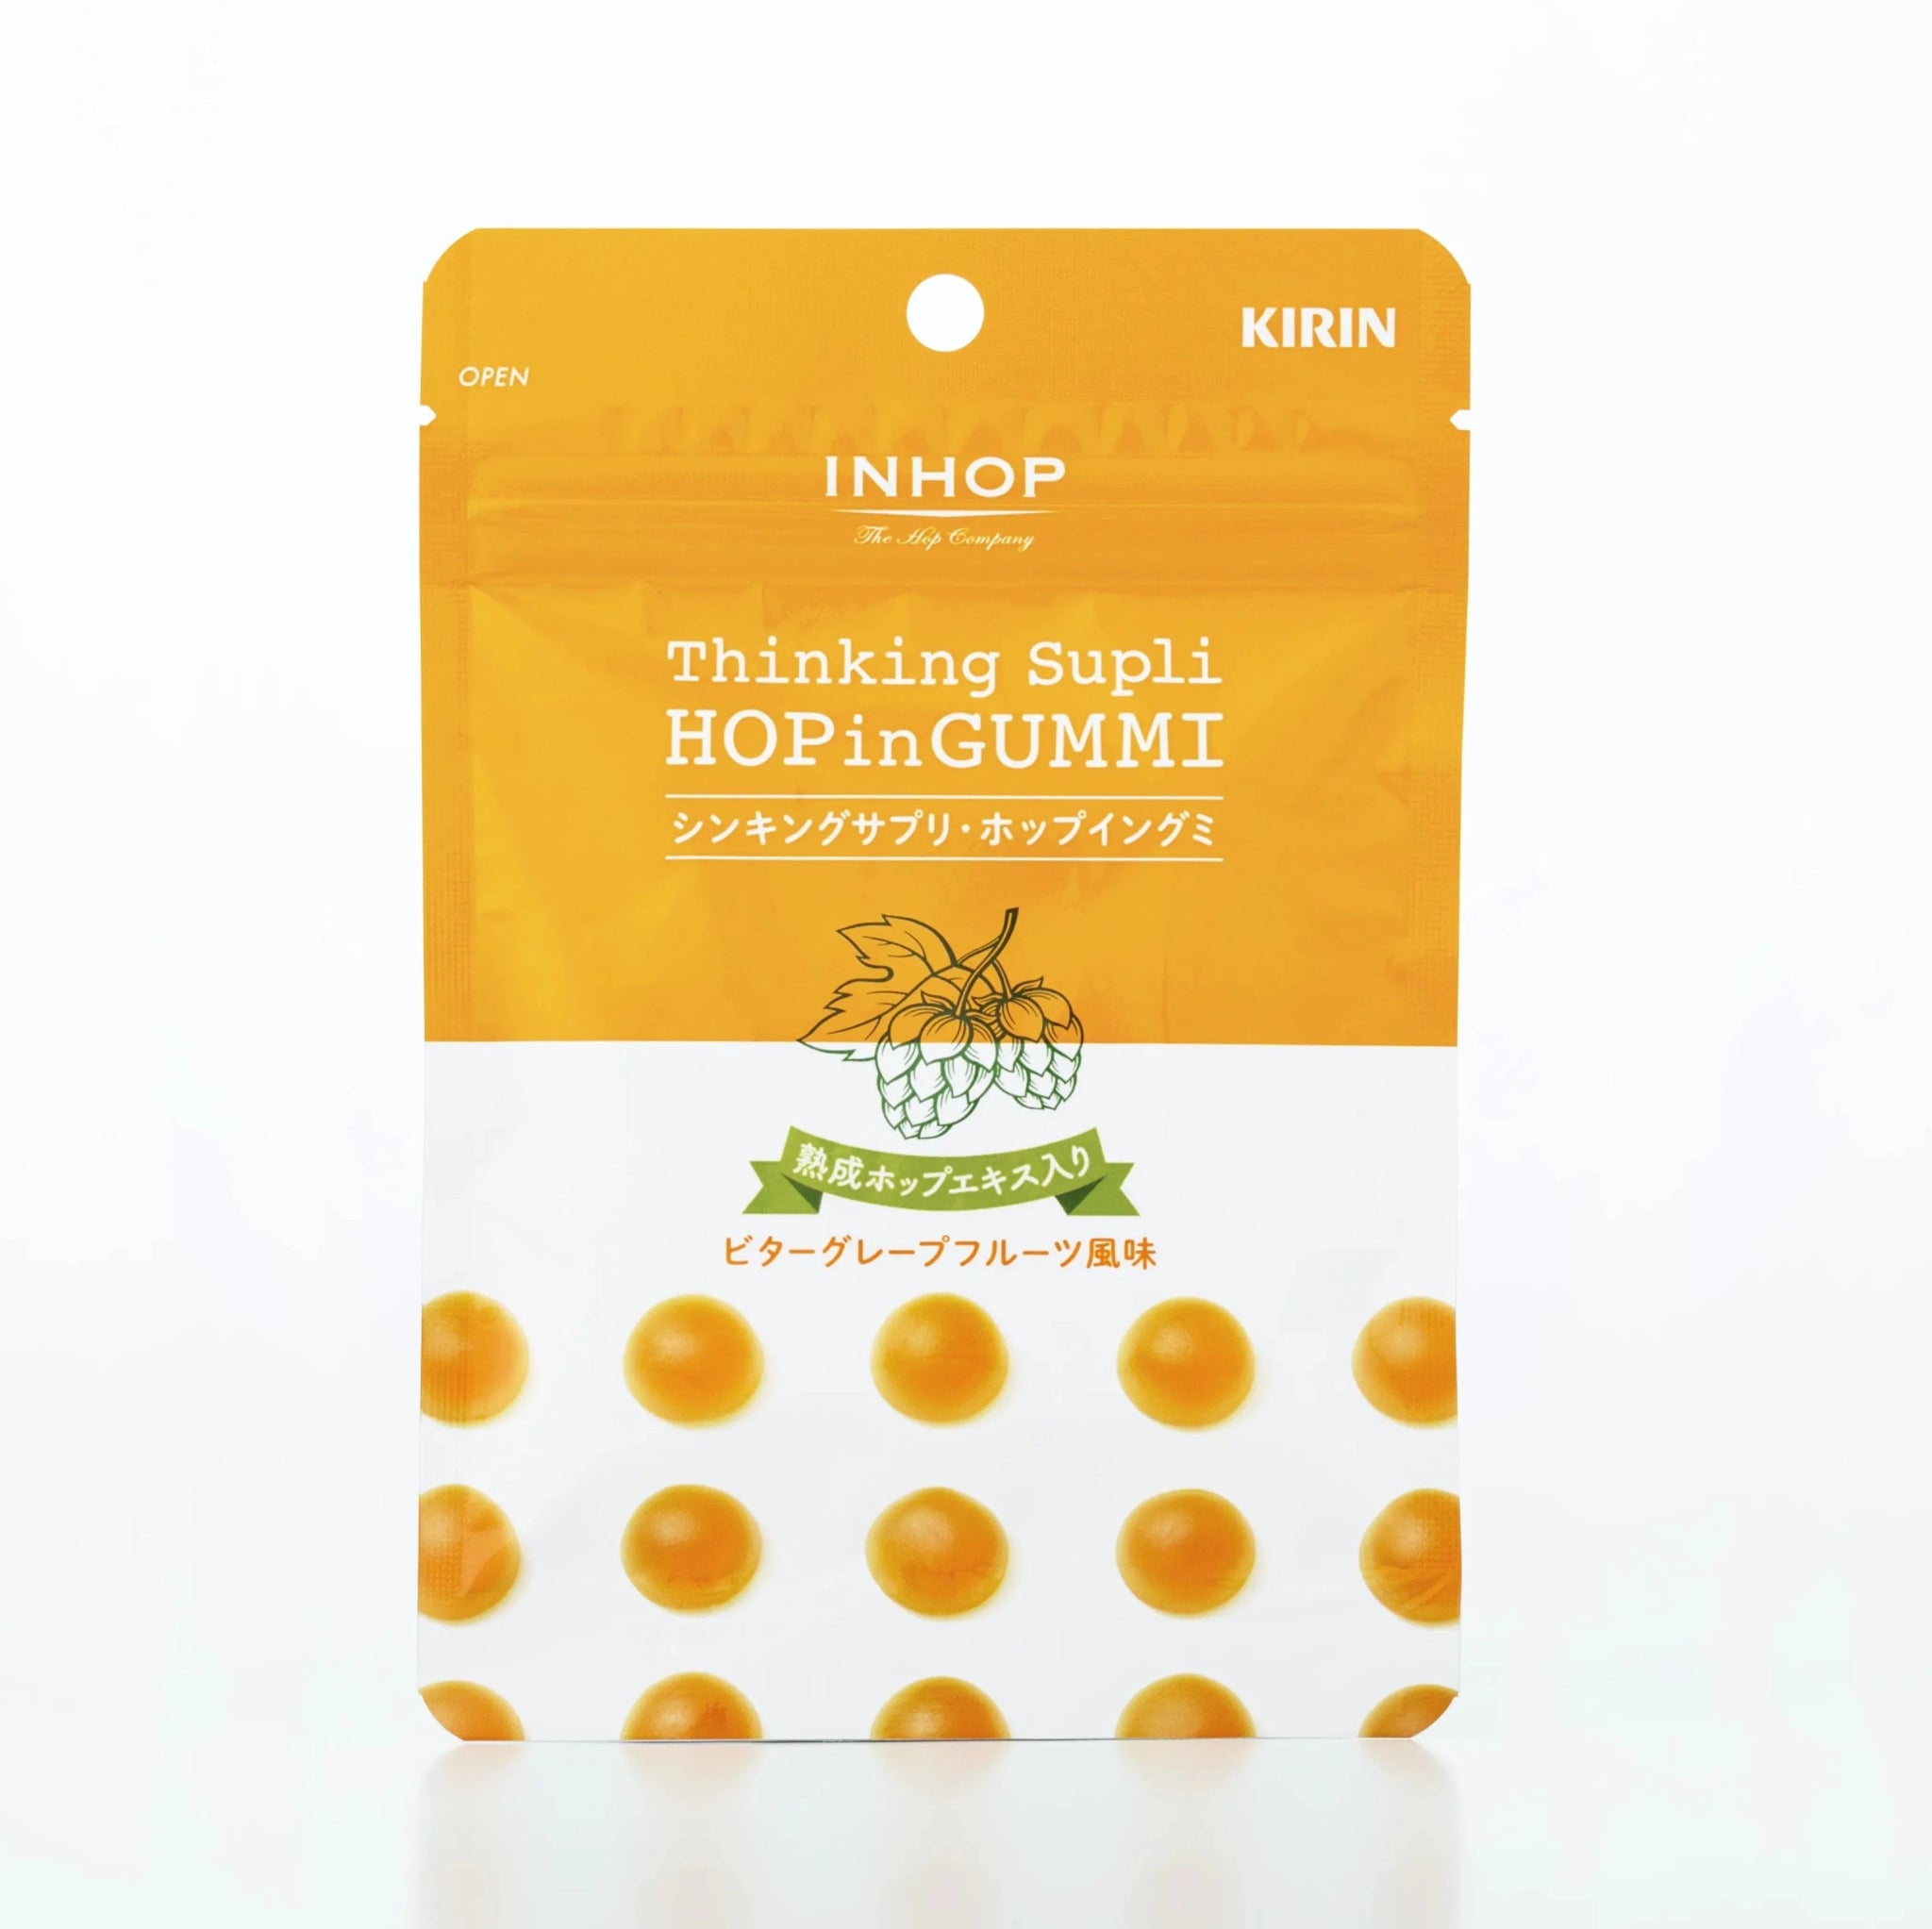 シンキングサプリ・ホップイングミ（1袋44g×3袋） - キリン INHOP SHOP